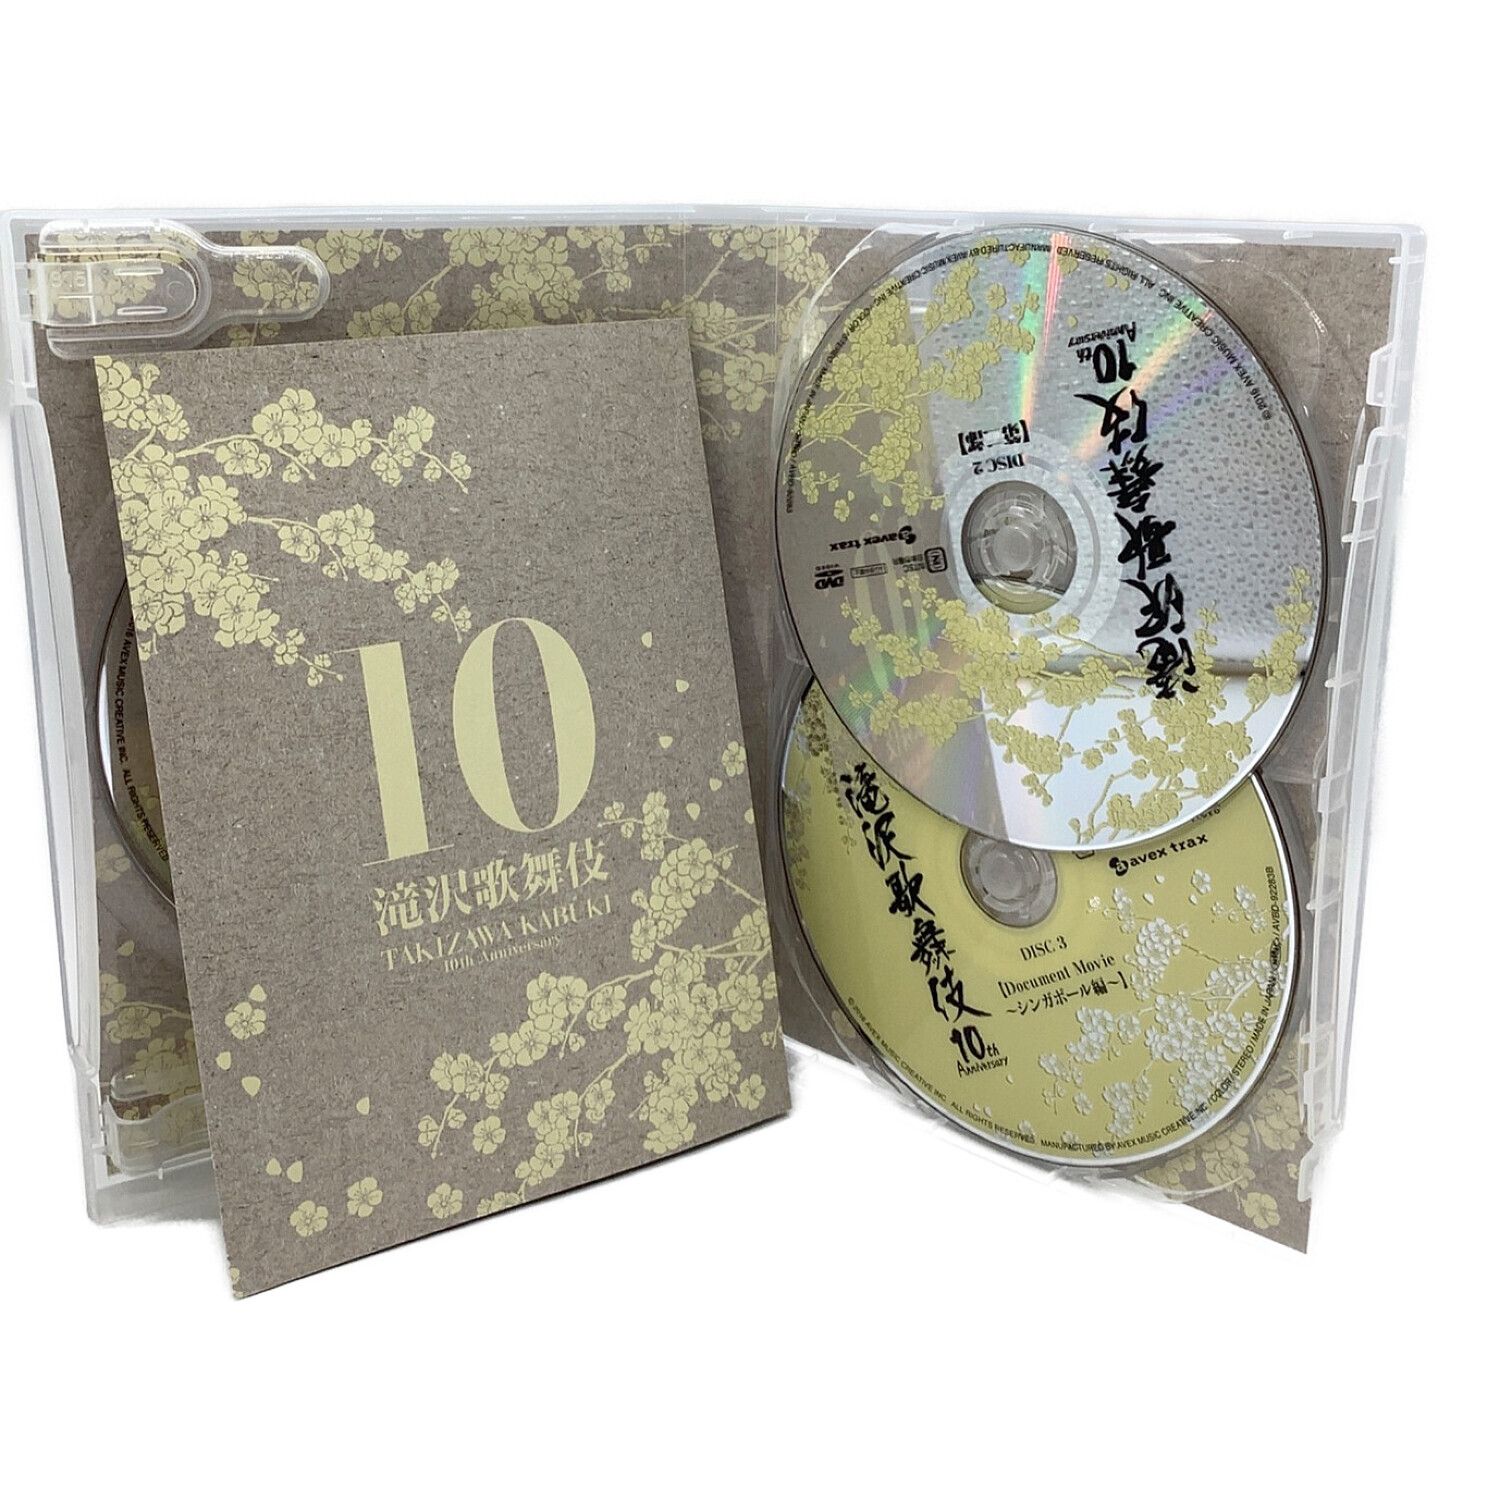 滝沢歌舞伎10th Anniversary 数量限定生産 「よ～いやさぁ～」盤5DVD2Blu-